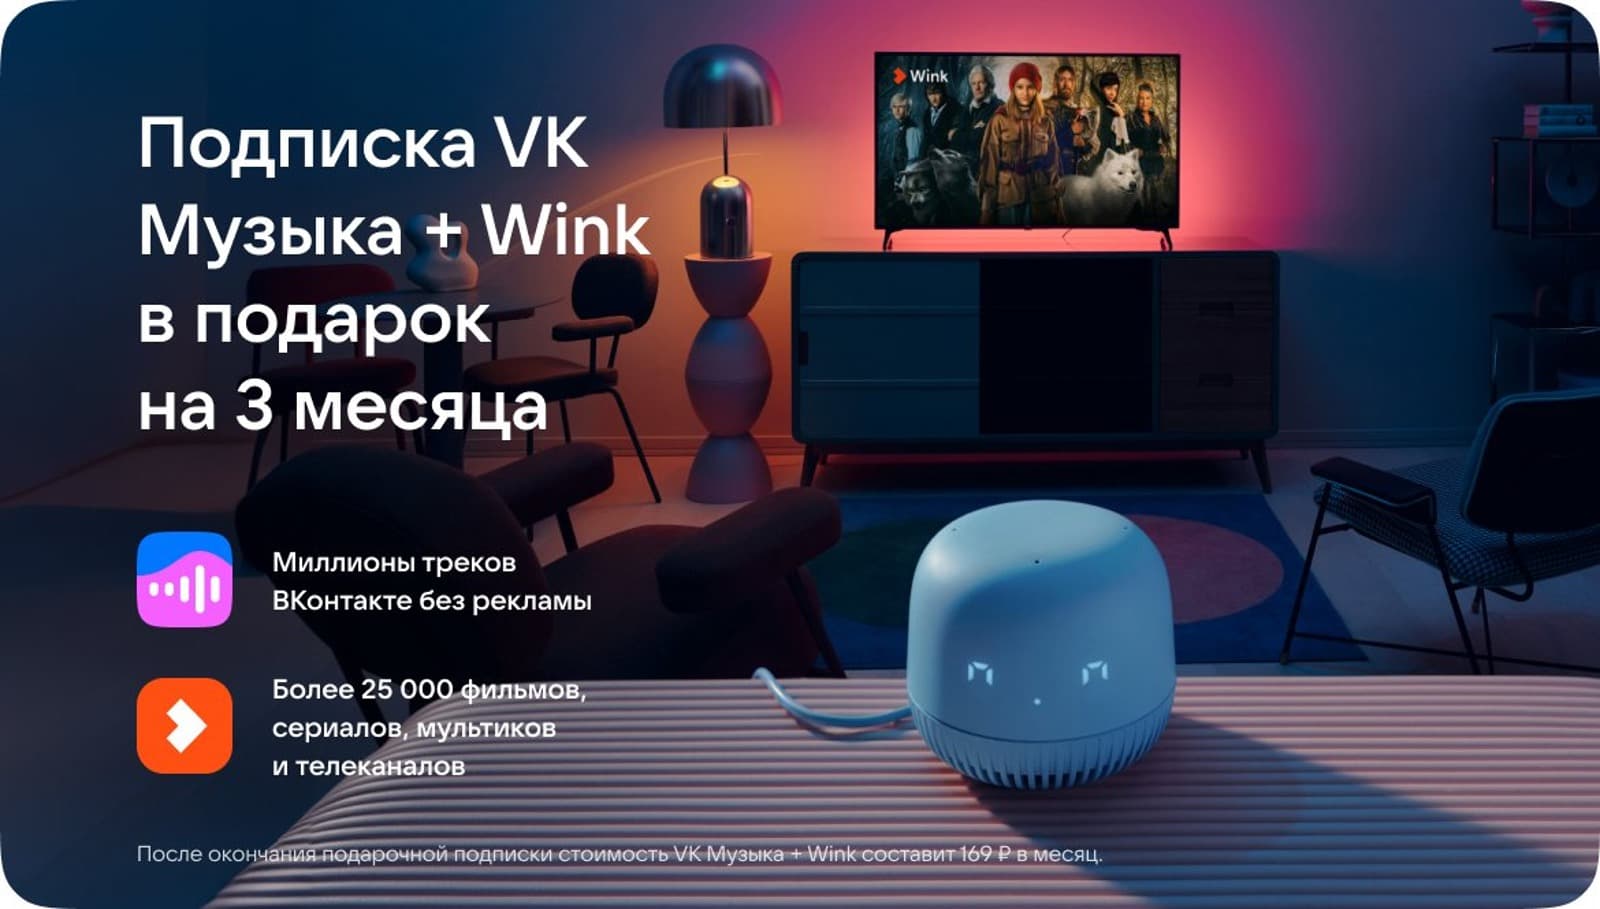  VK  + Wink    3 .